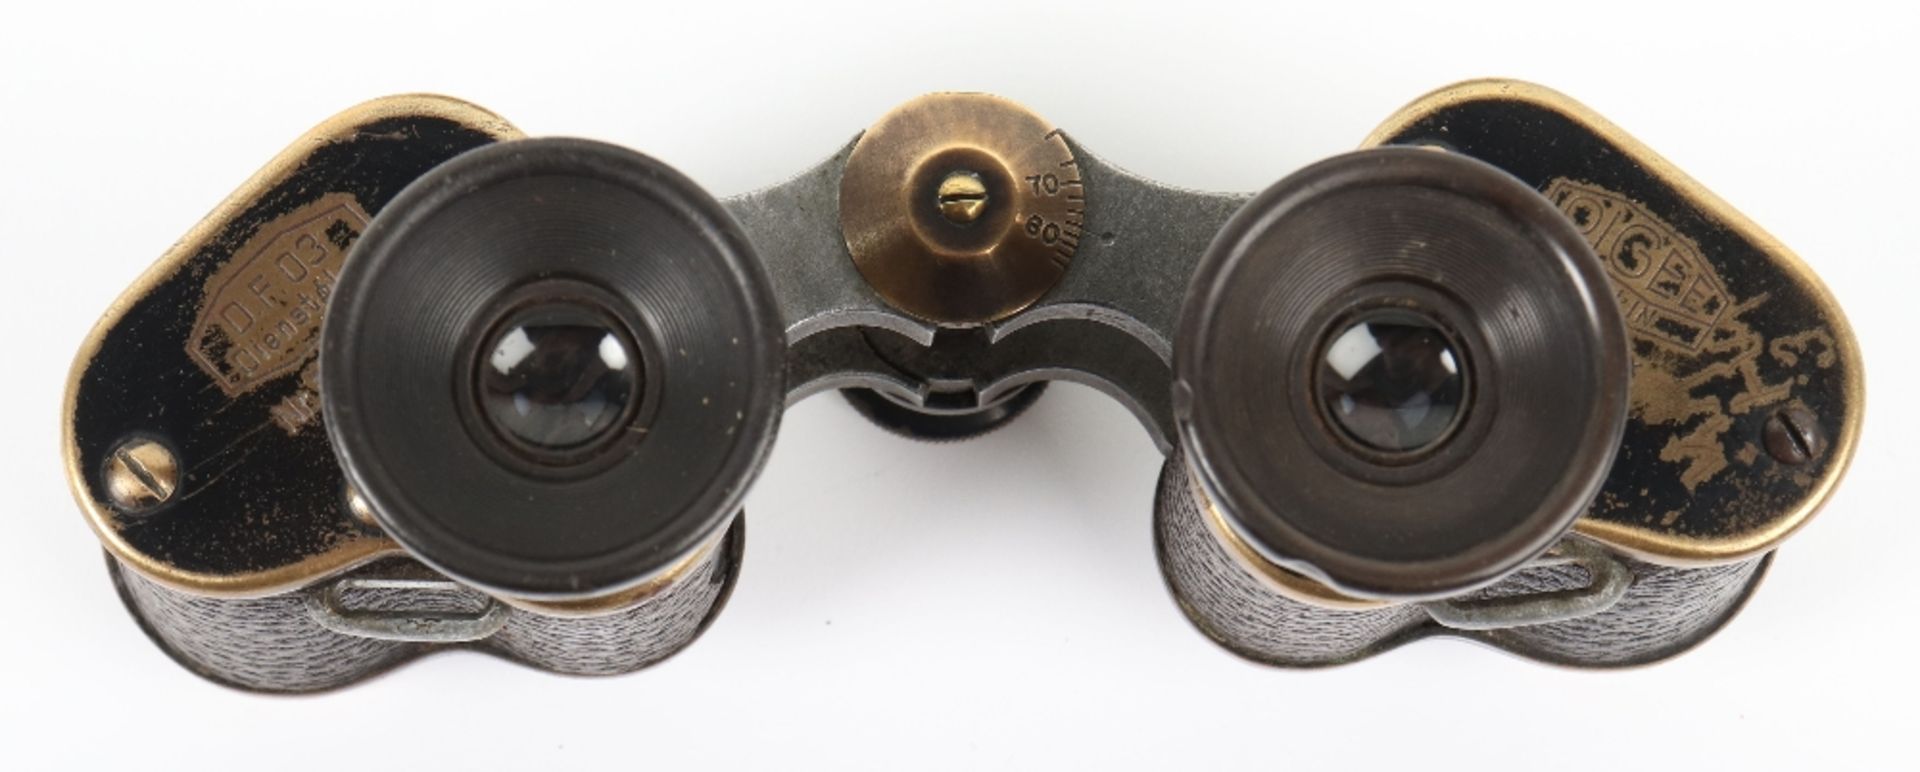 WW1 German Officers Binoculars Case - Image 3 of 10